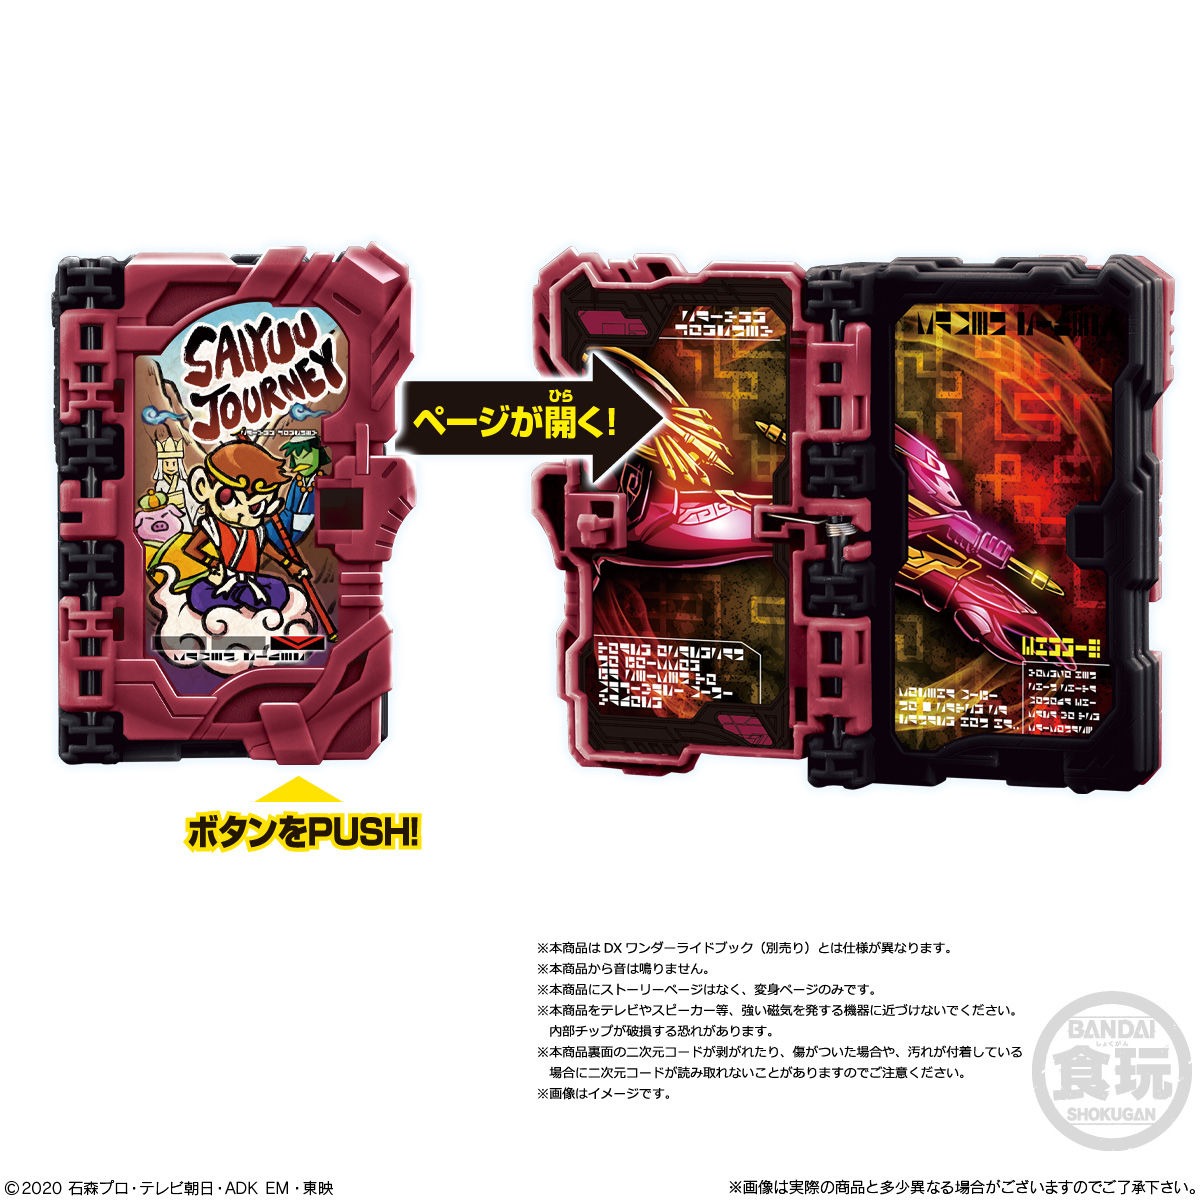 【食玩】仮面ライダーセイバー『コレクタブルワンダーライドブック SG04』8個入りBOX-008